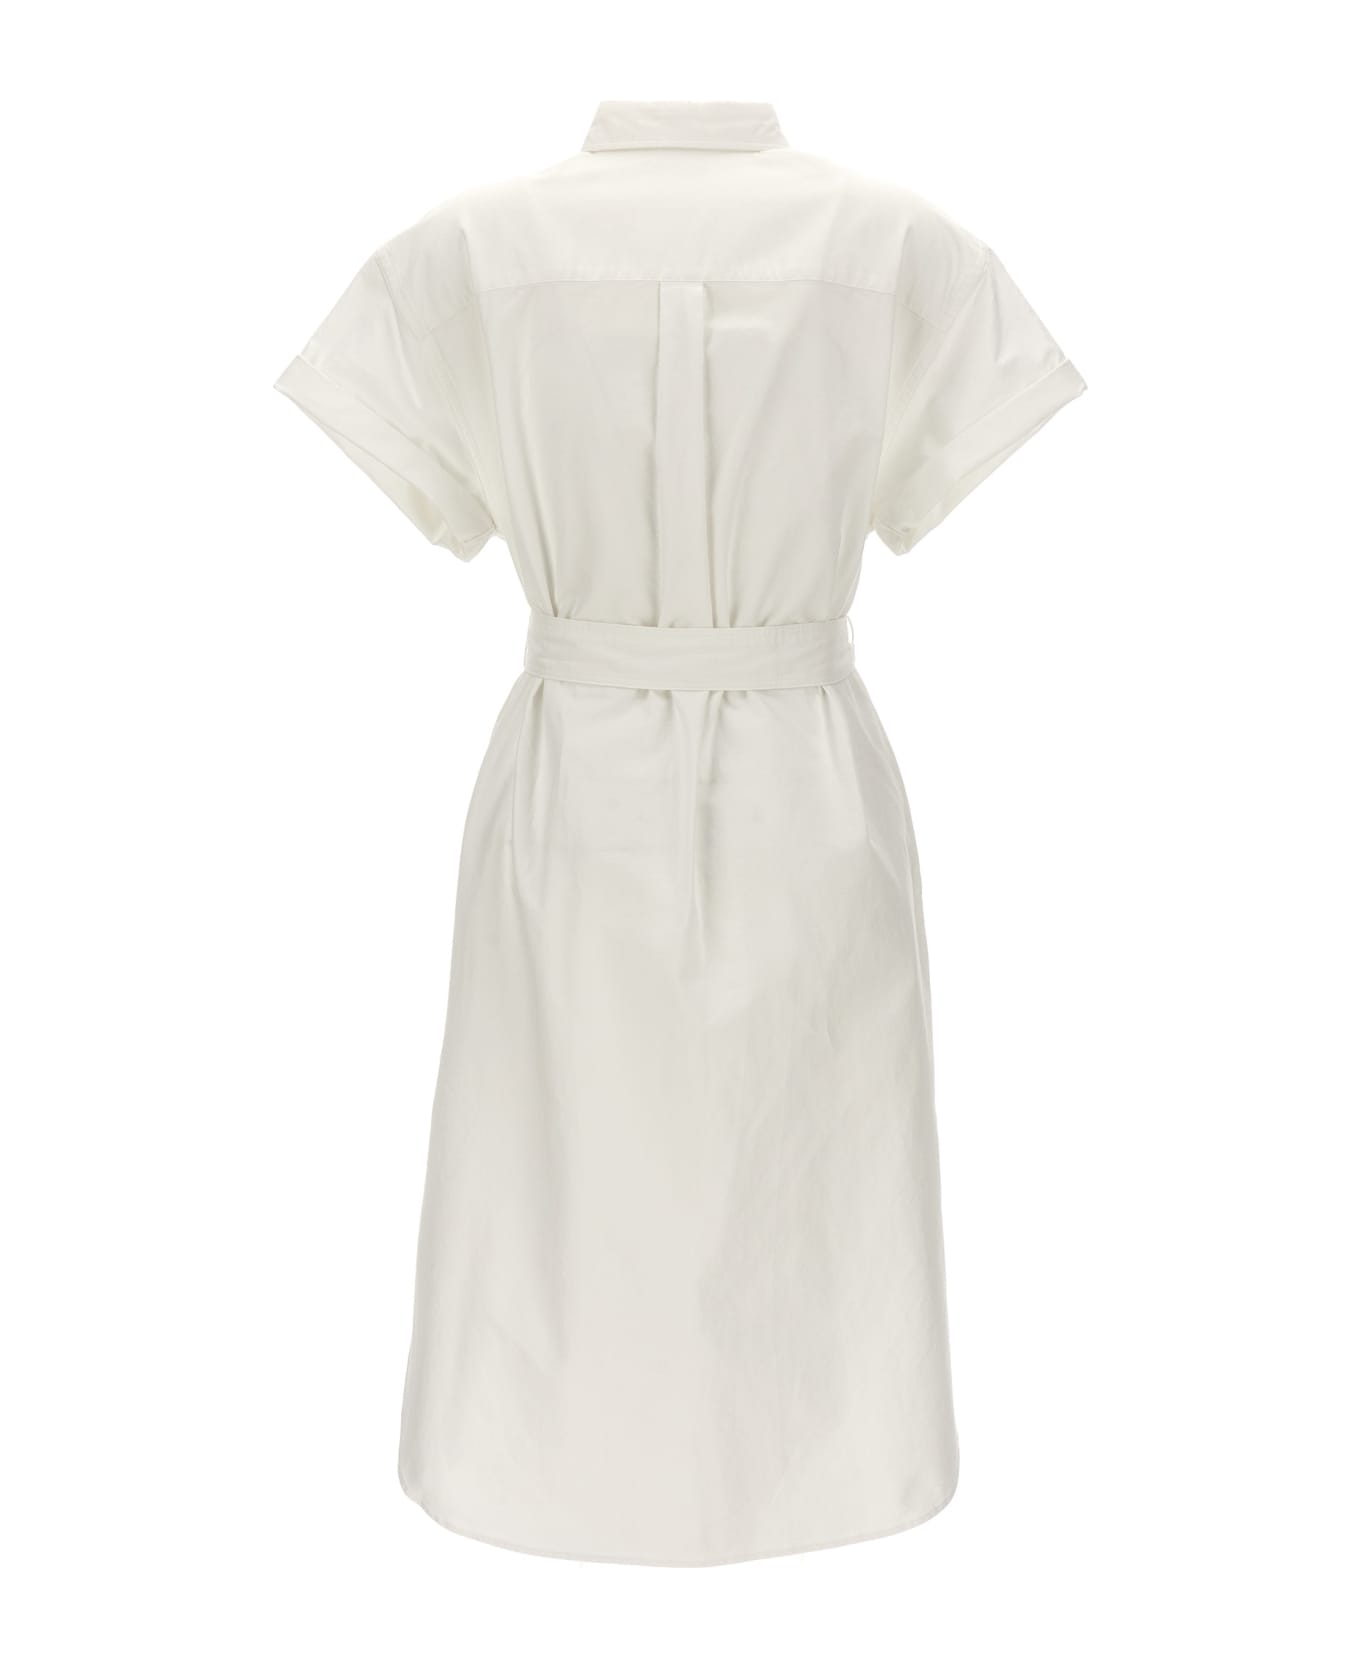 Polo Ralph Lauren Logo Embroidery Chemisier Dress - White